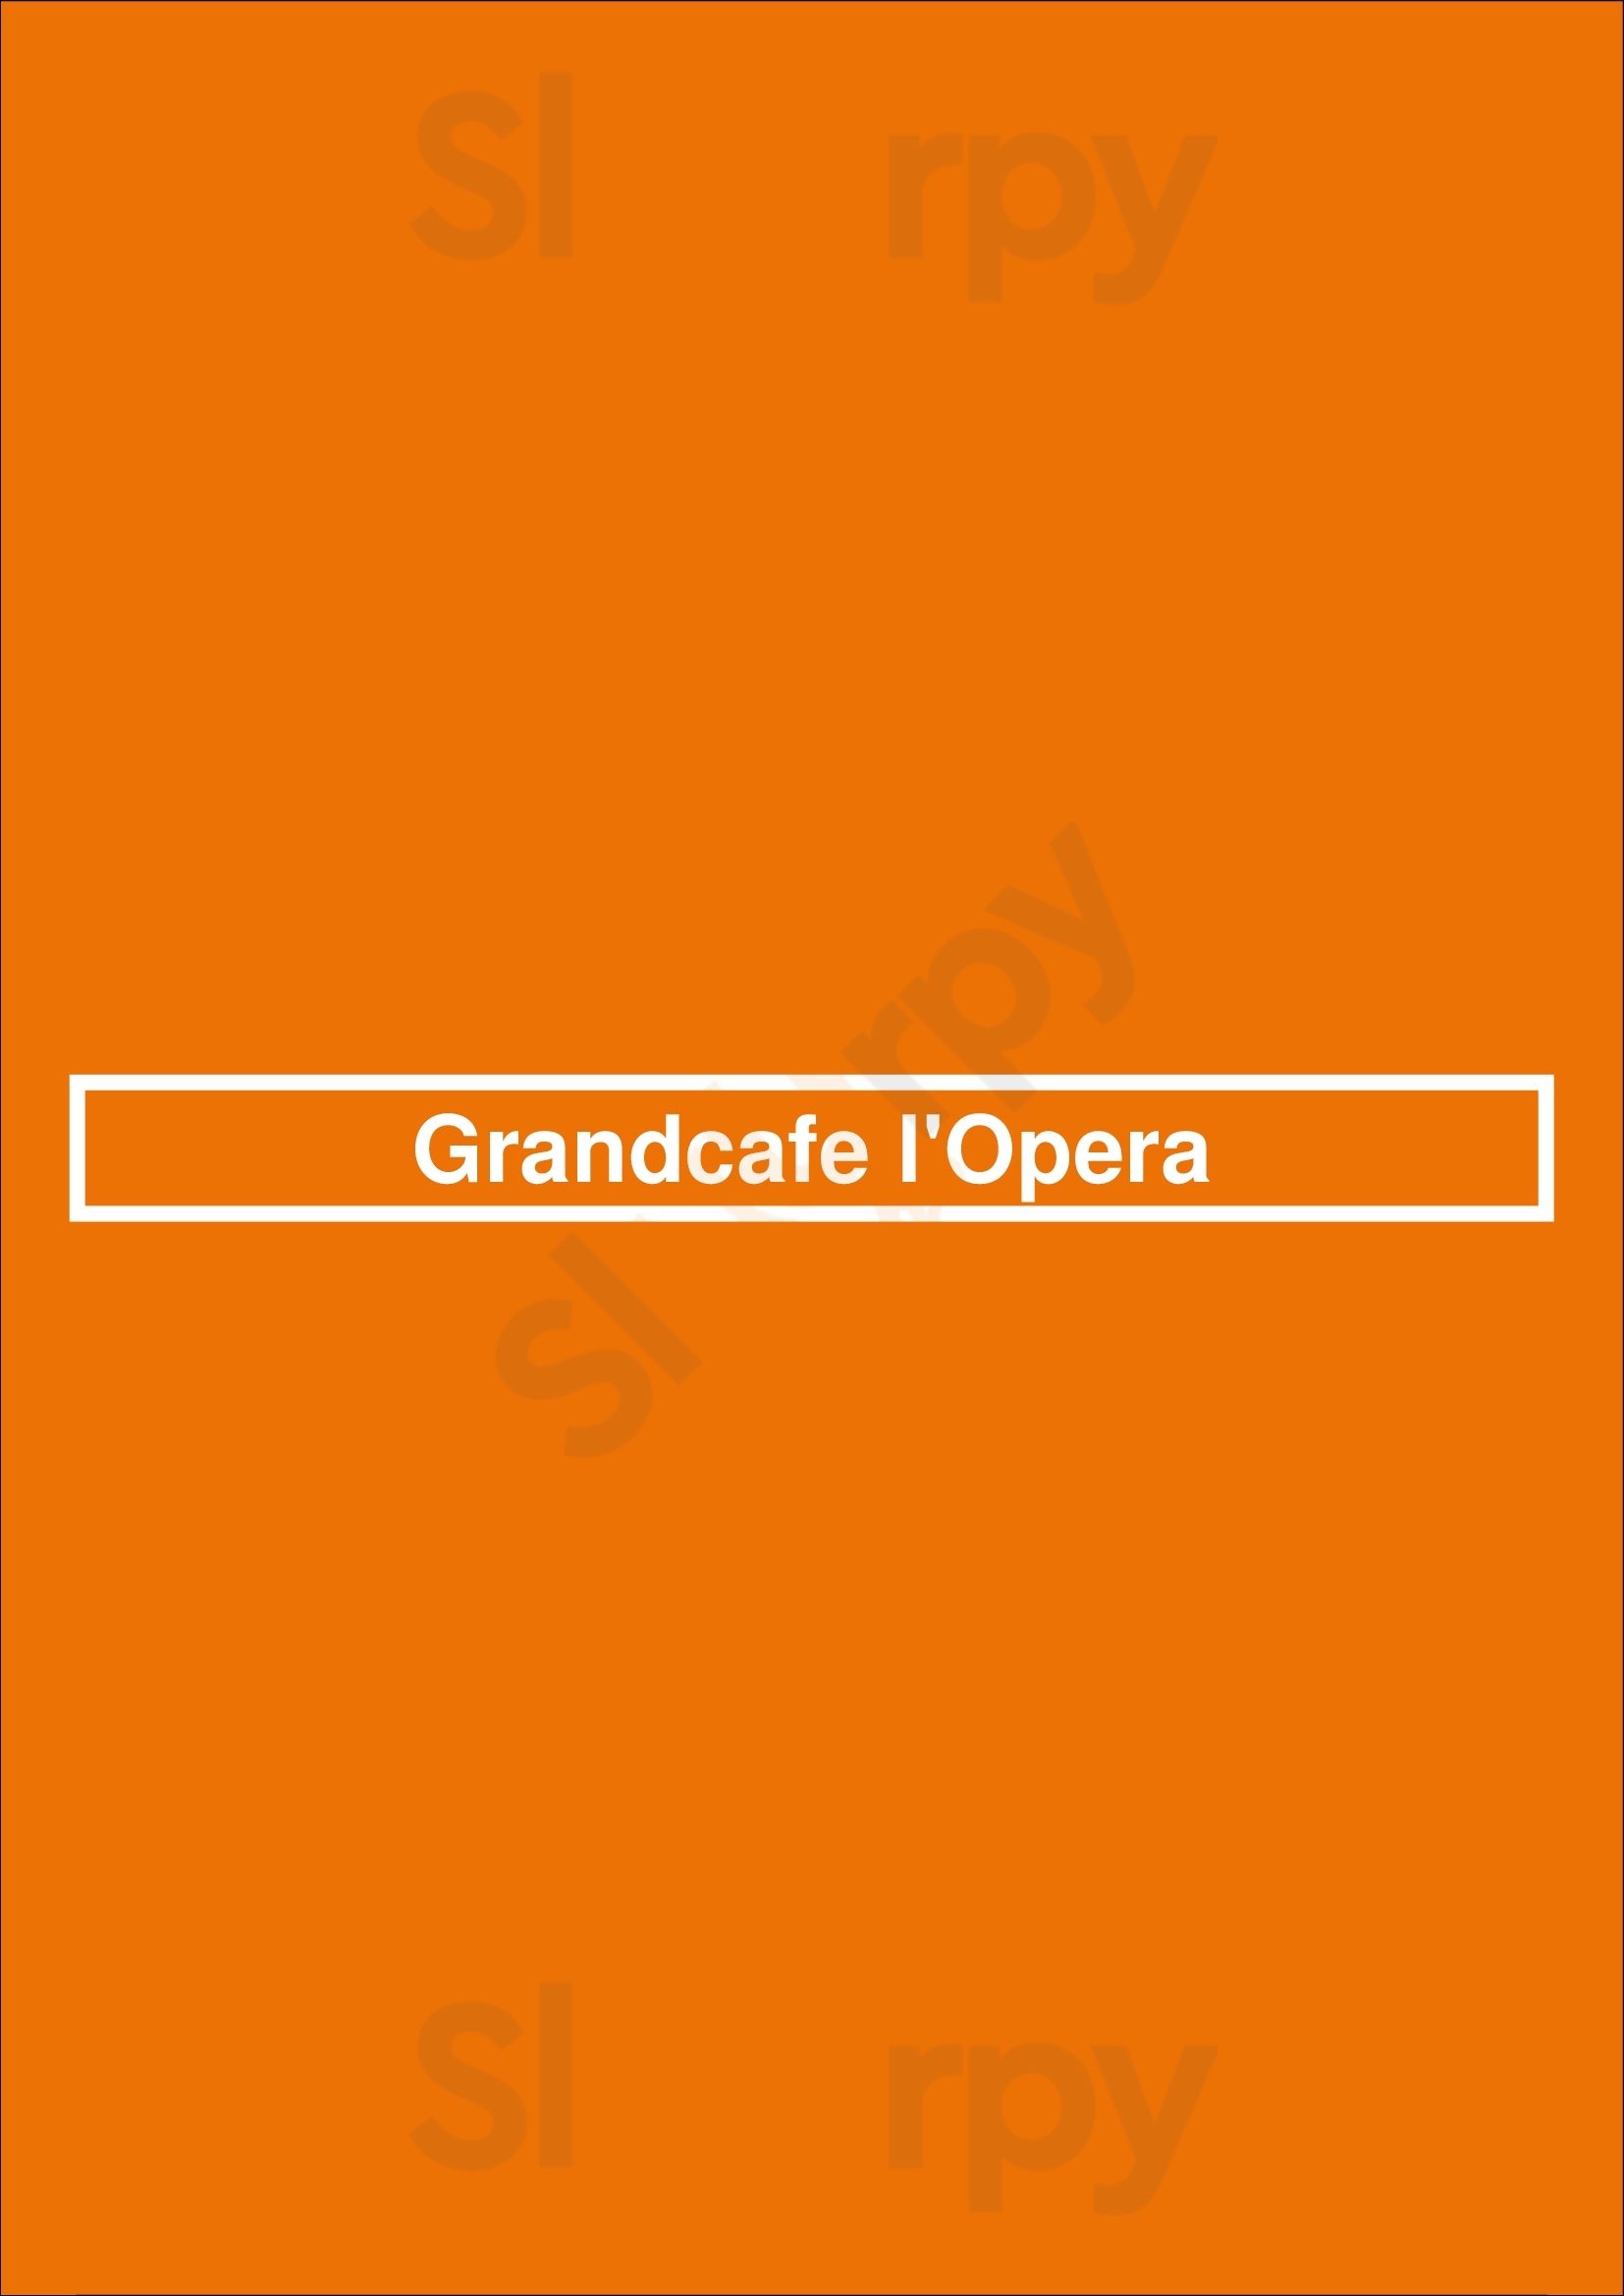 Grandcafe L'opera Amsterdam Menu - 1